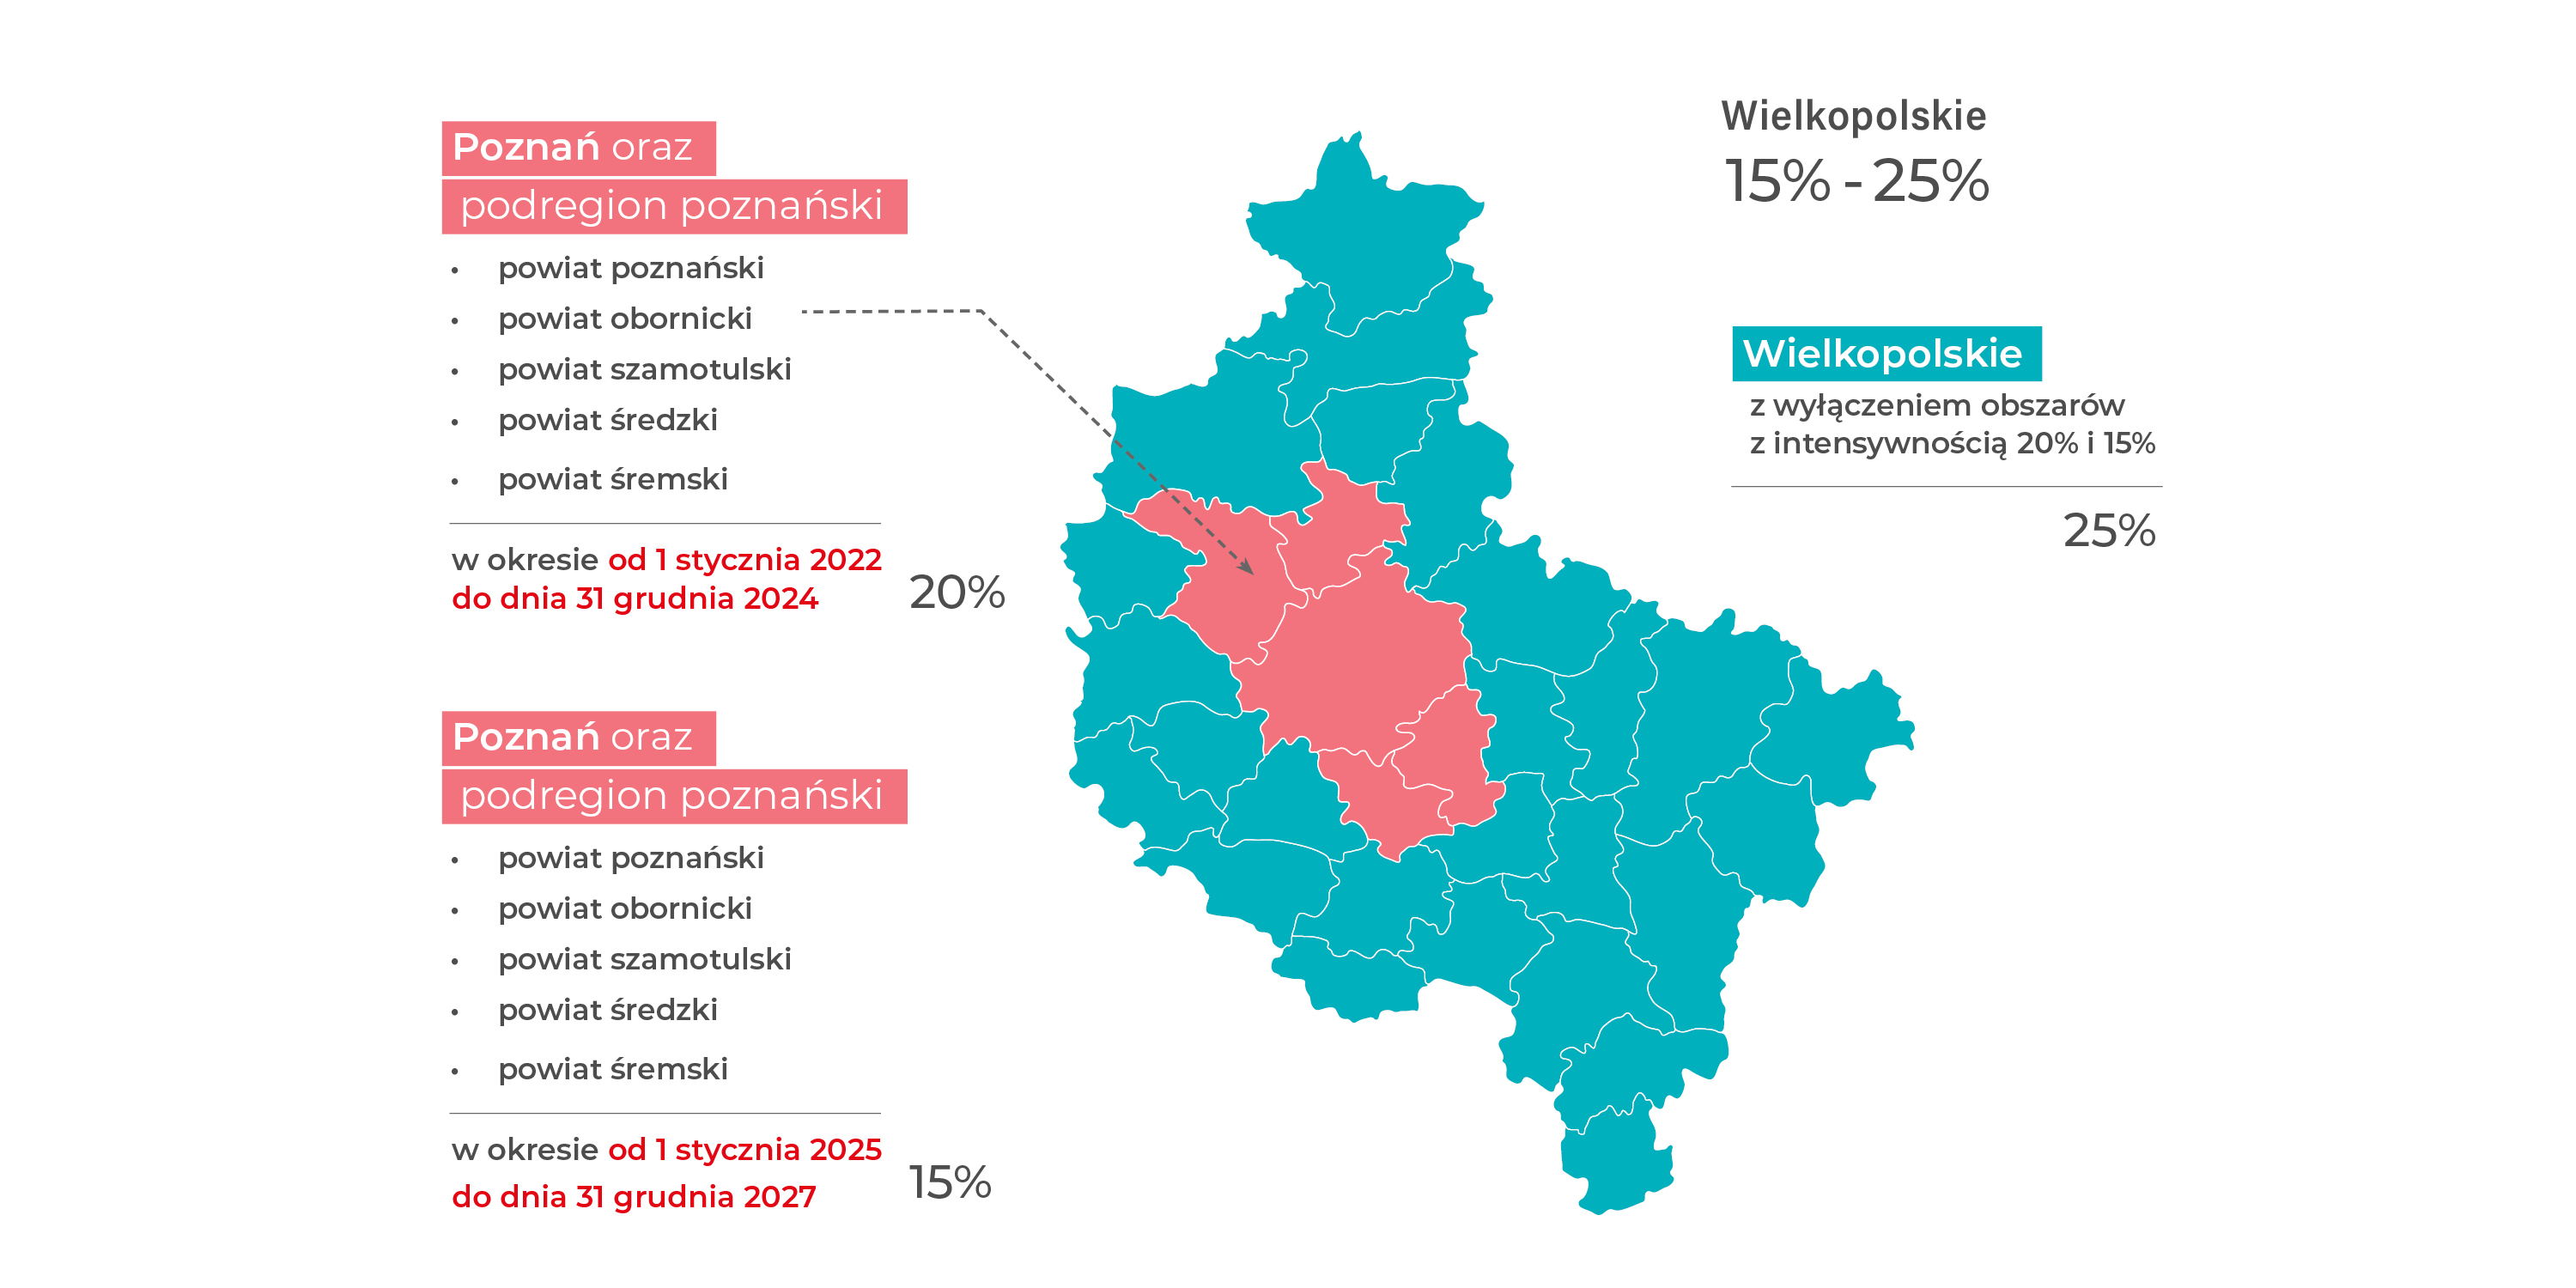 Grafika przedstawiająca mapę województwa wielkopolskiego podzielonego na podregiony i gminy. Poszczególne obszary zaznaczone kolorami. Mapa wskazuje na maksymalne intensywności wsparcia w następujących wysokościach: miasto Poznań oraz podregionu poznańskiego (tj. powiat poznański, obornicki, szamotulski, średzki, śremski) – 20% w okresie od dnia 1 stycznia 2022 r. do dnia 31 grudnia 2024 r. i 15% w okresie od dnia 1 stycznia 2025 r. do dnia 31 grudnia 2027 r. oraz dla pozostałego obszaru województwa niezależnie od okresu – 25%.